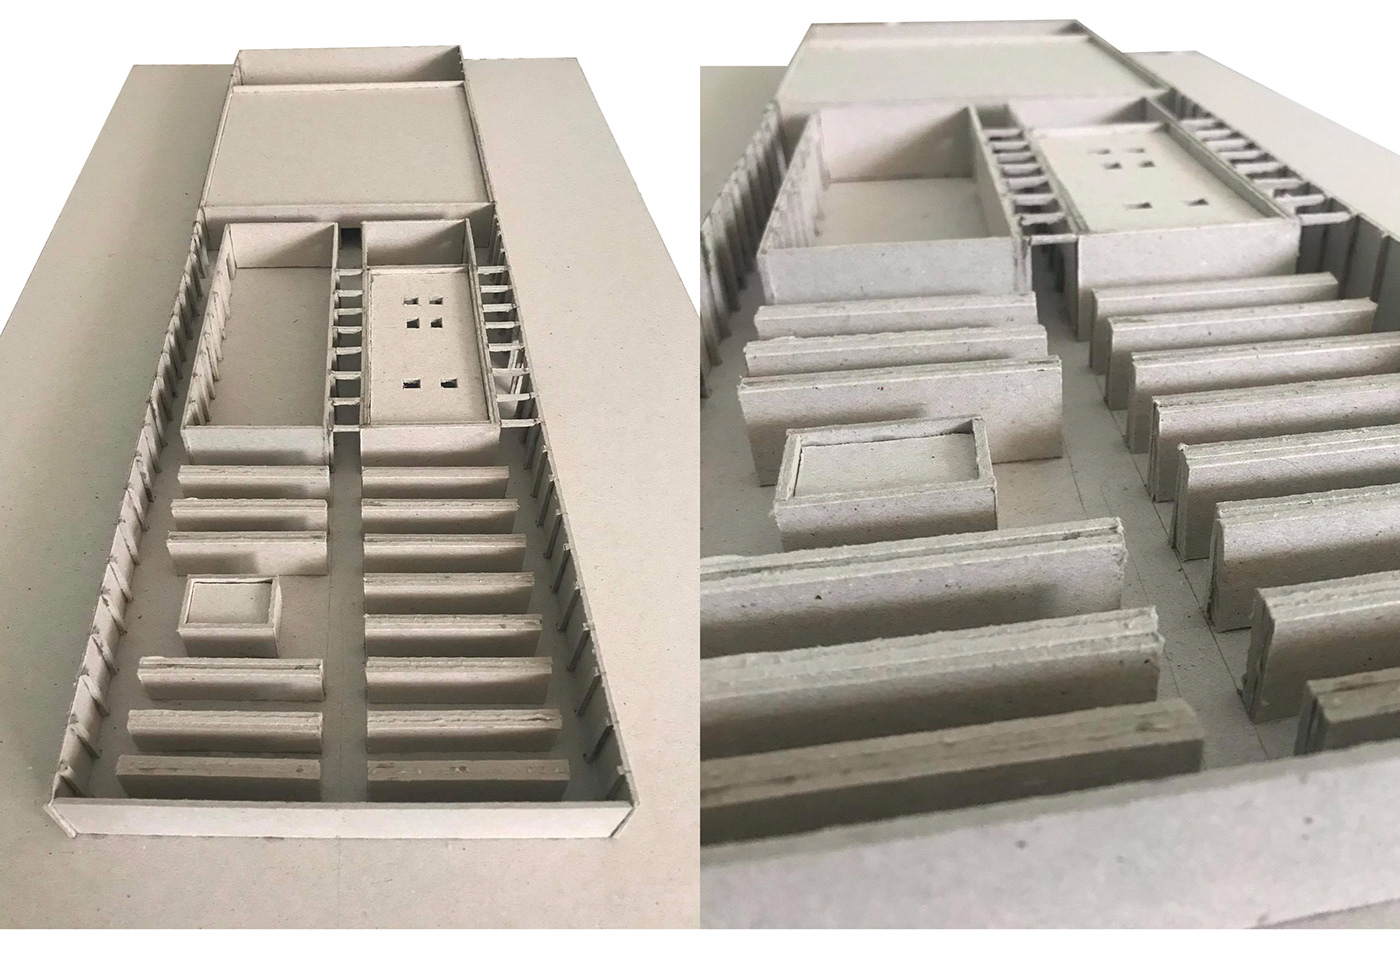 AutoCAD brick architecture  crematorium scale model